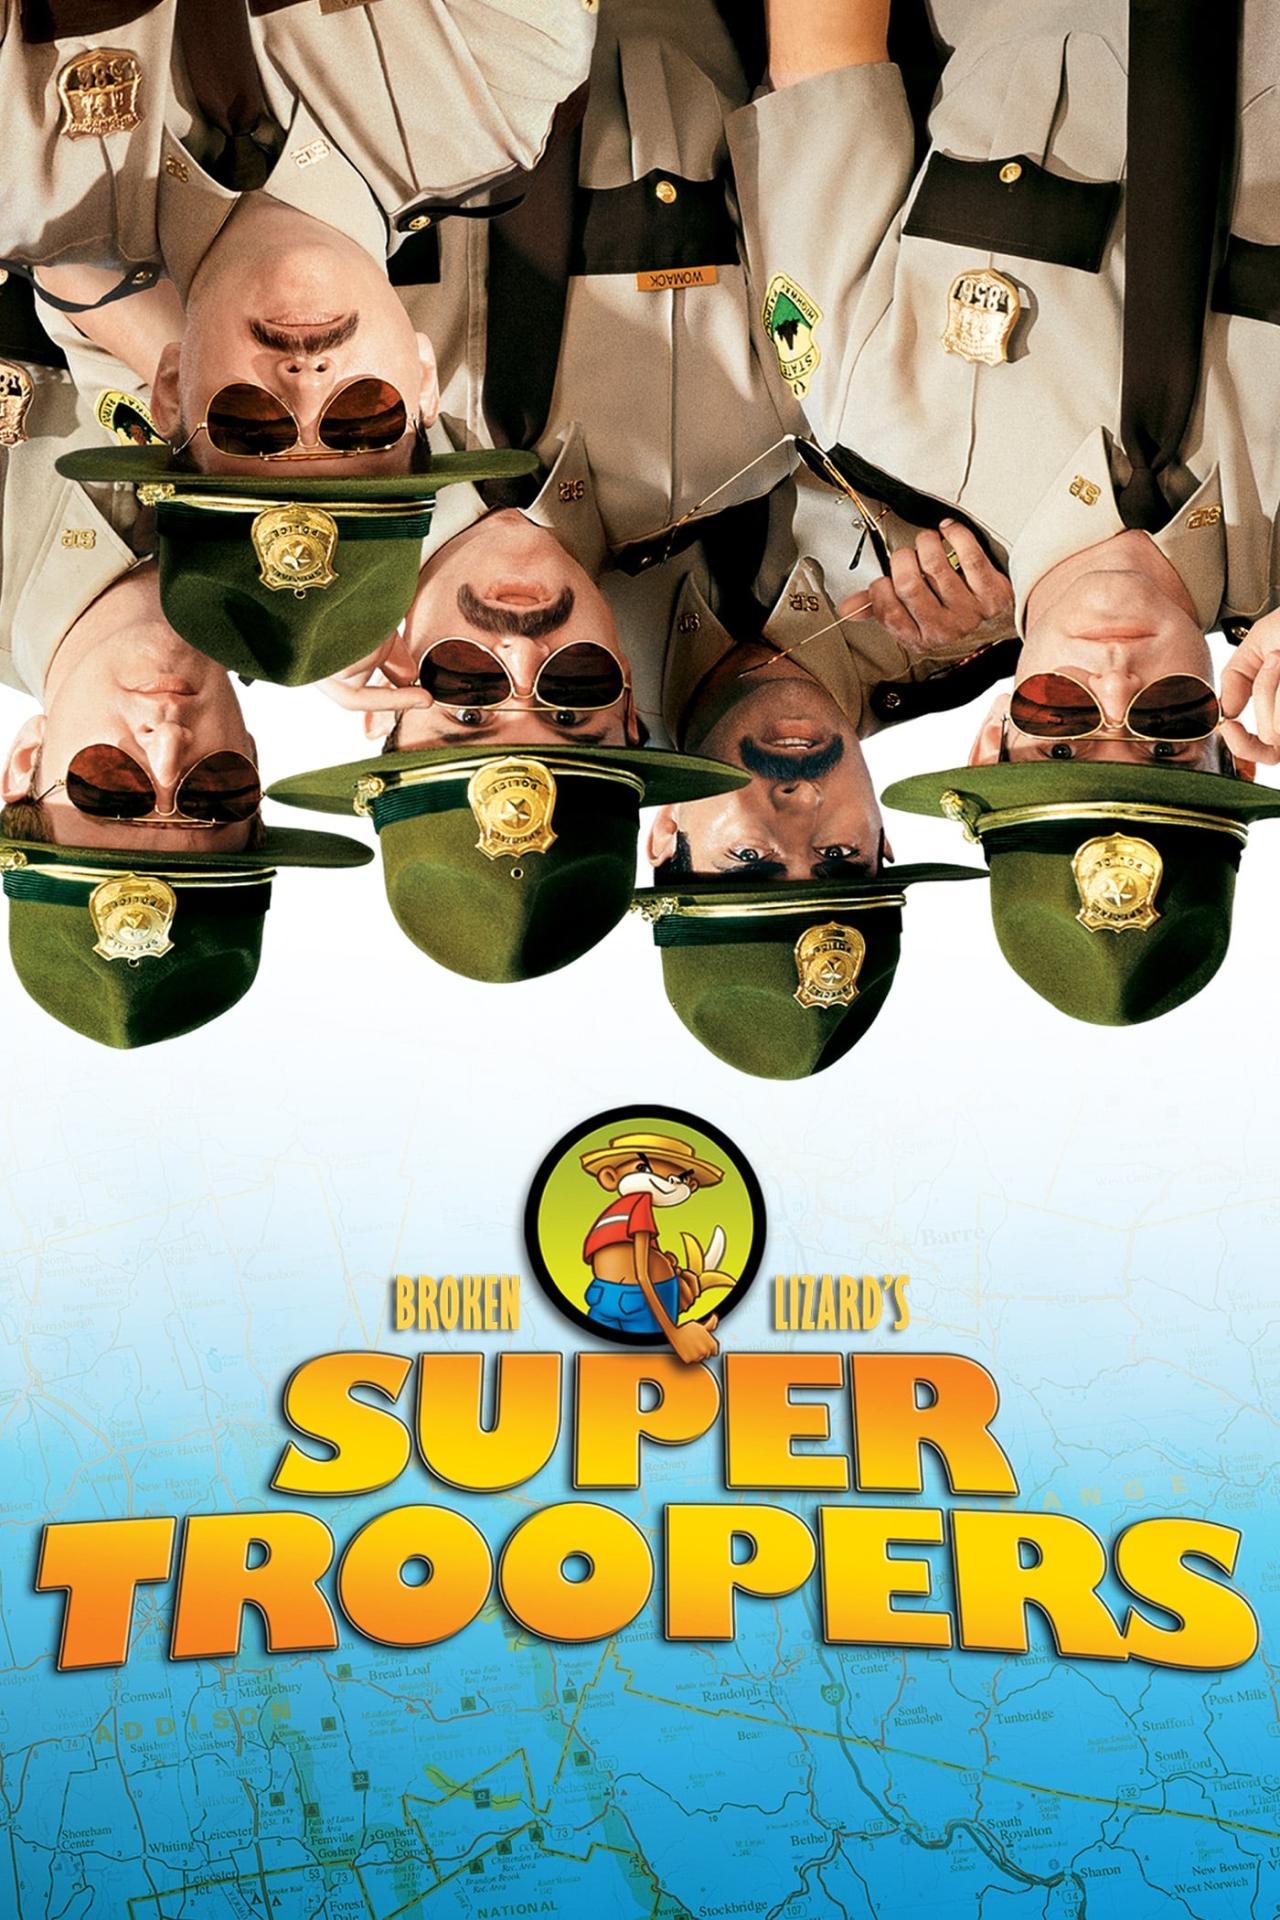 Affiche du film Super Troopers